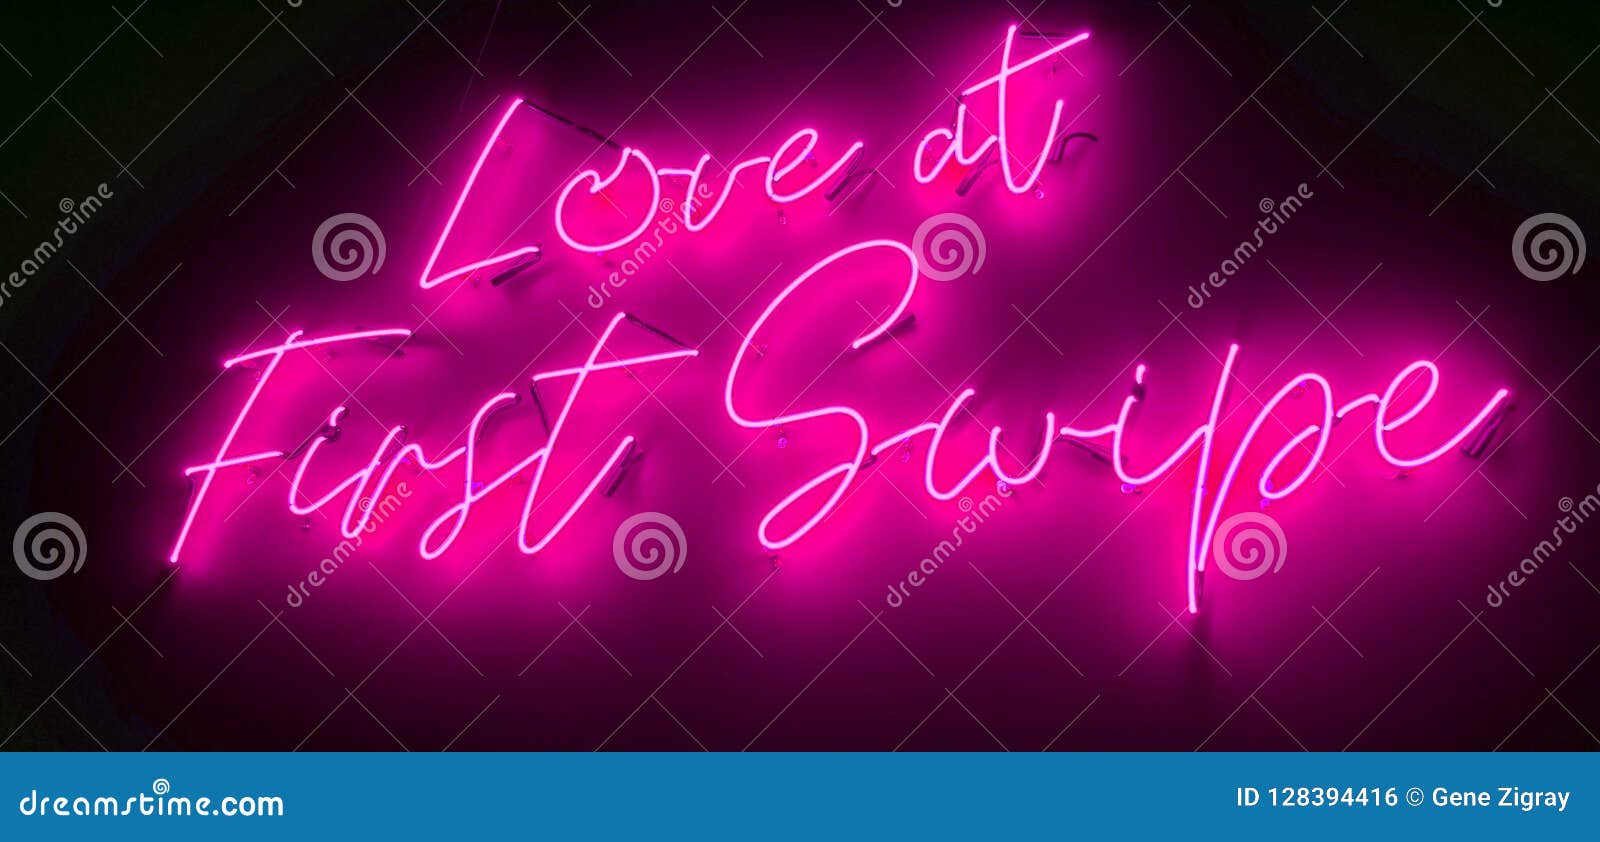 online dating neon)